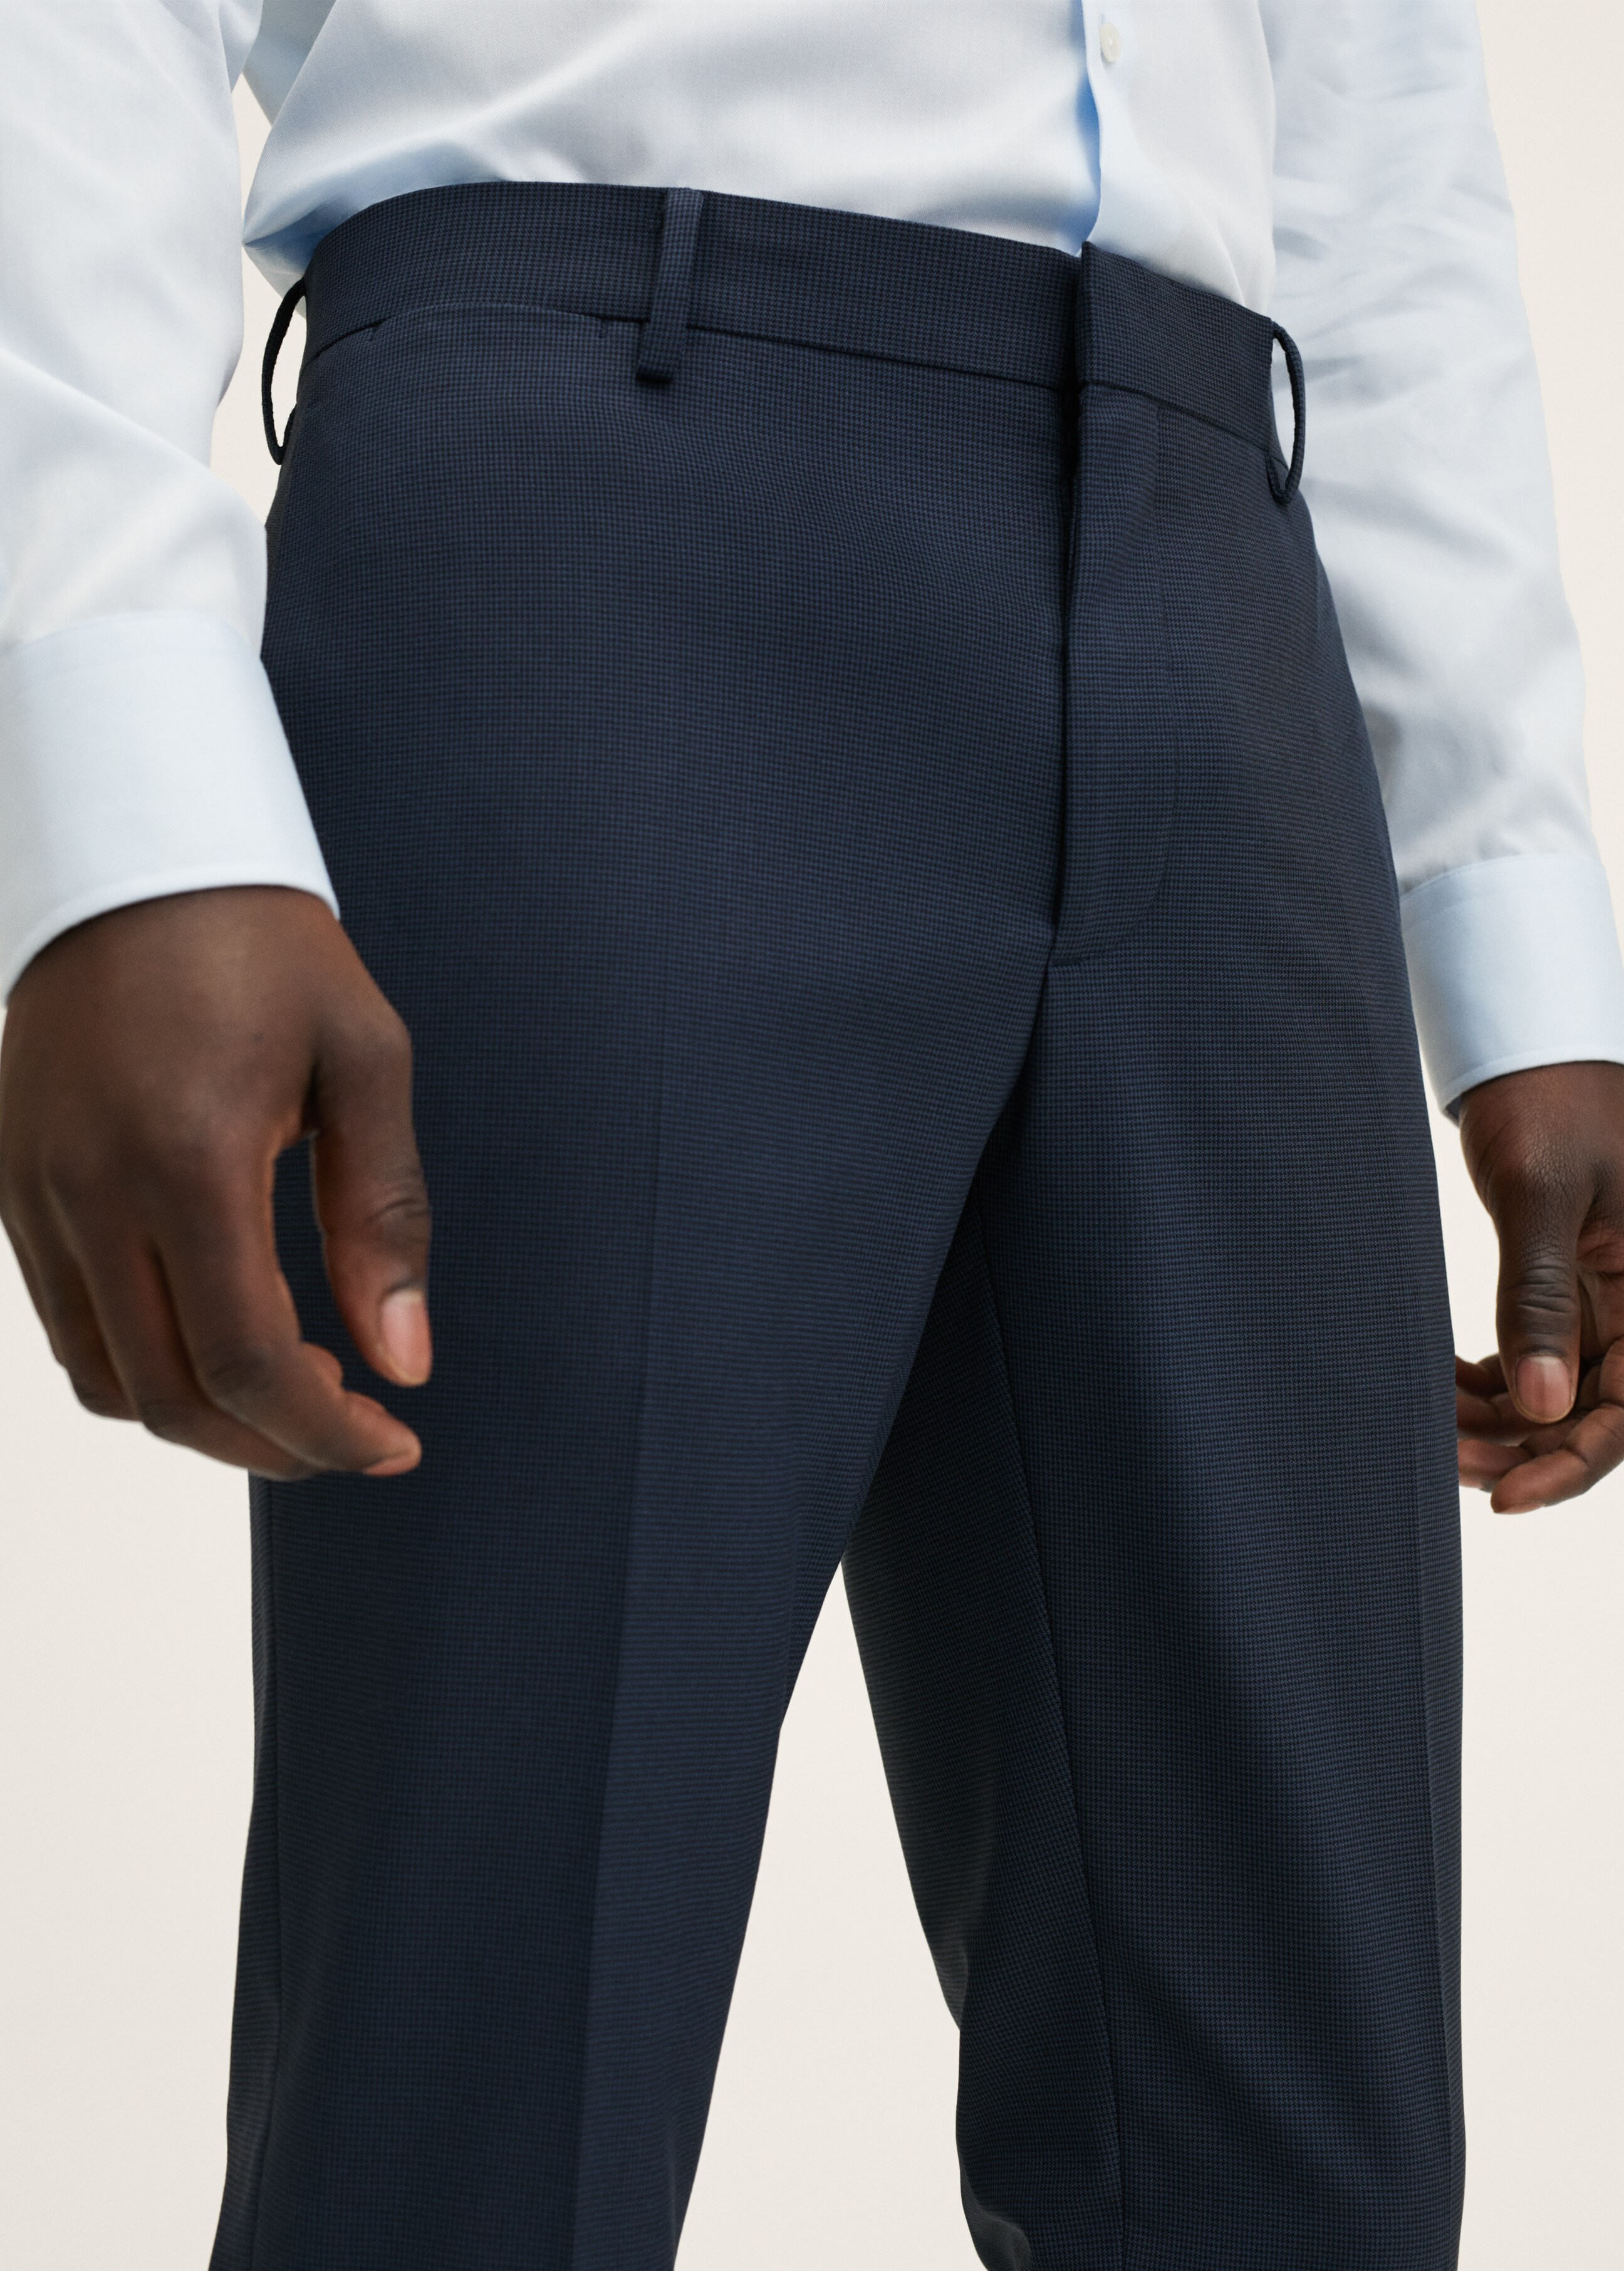 Pantalón traje super slim fit - Detalle del artículo 1